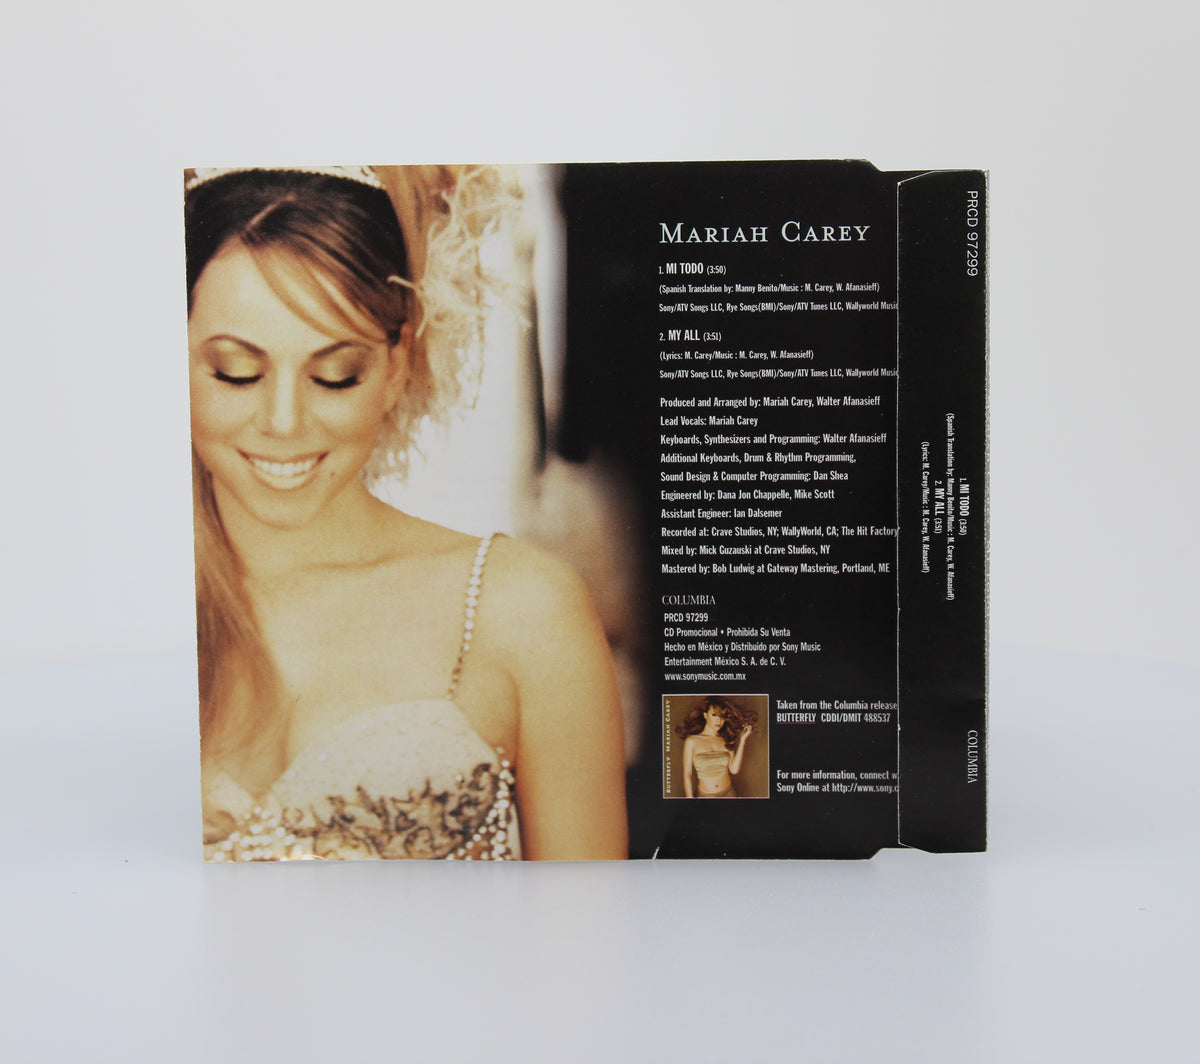 Mariah Carey, Mi Todo, CD Single Promo, Mexico 1998 (CD 642)